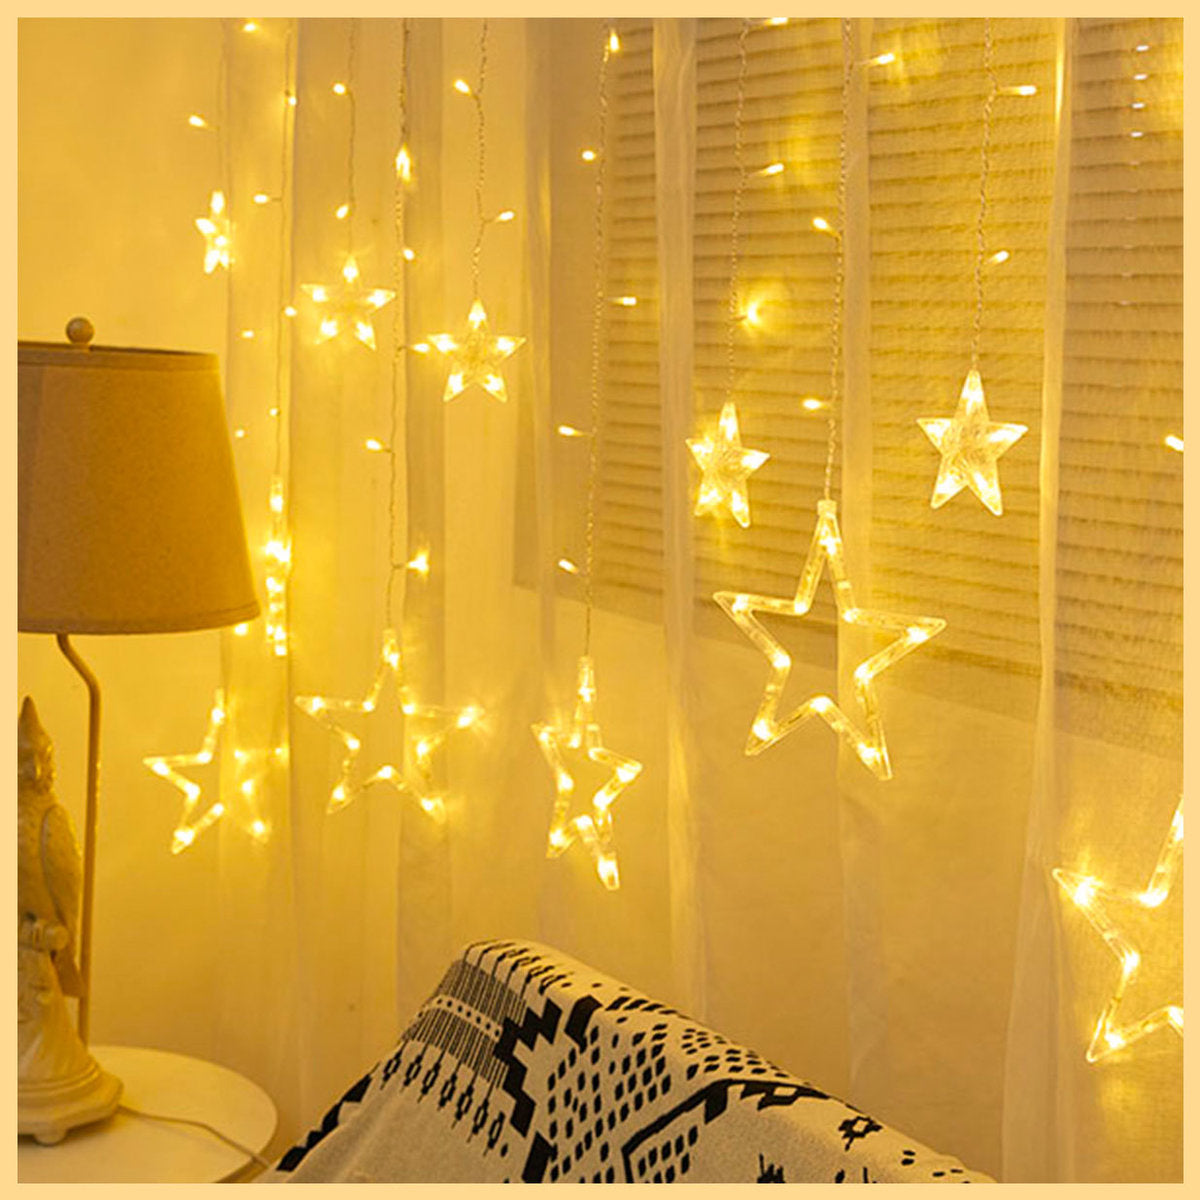 LED浪漫星空窗簾燈 浪漫USB供電LED瀑布燈連勾 窗簾燈 聖誕氣氛 燈帶